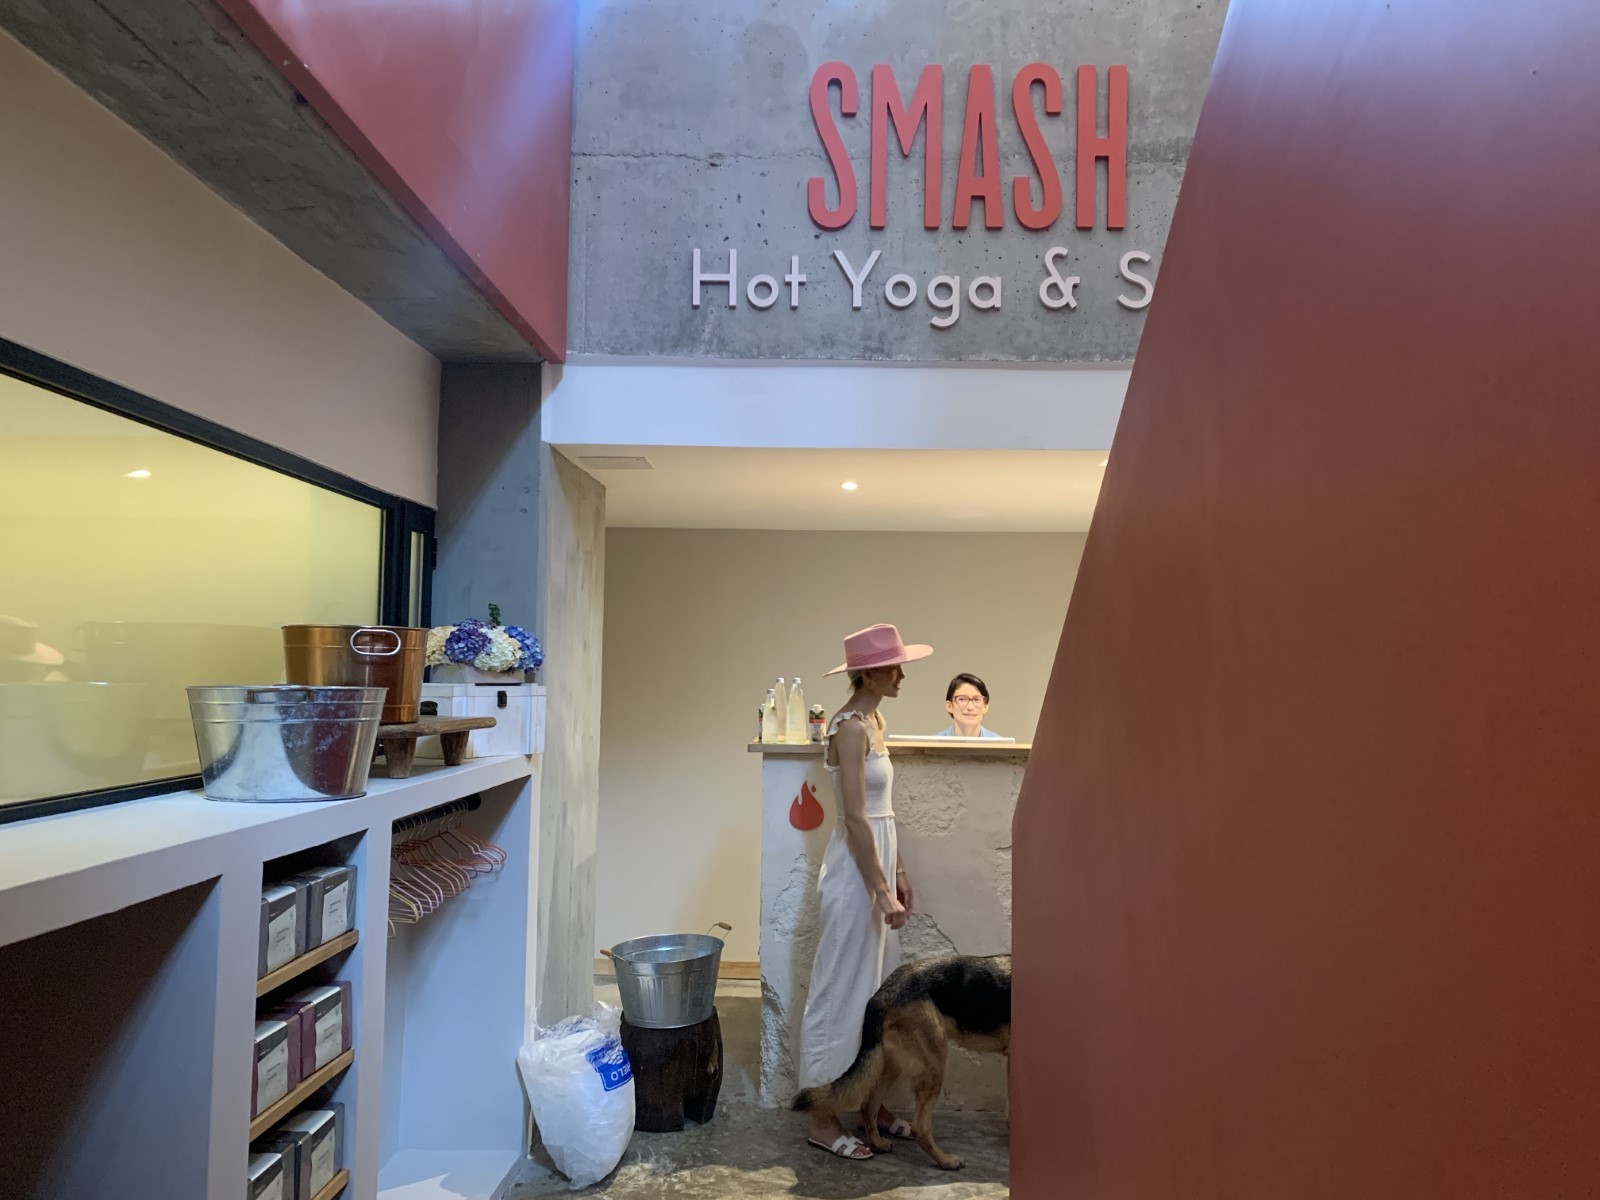 The Experience at SMASH Hot Yoga & Spa 
